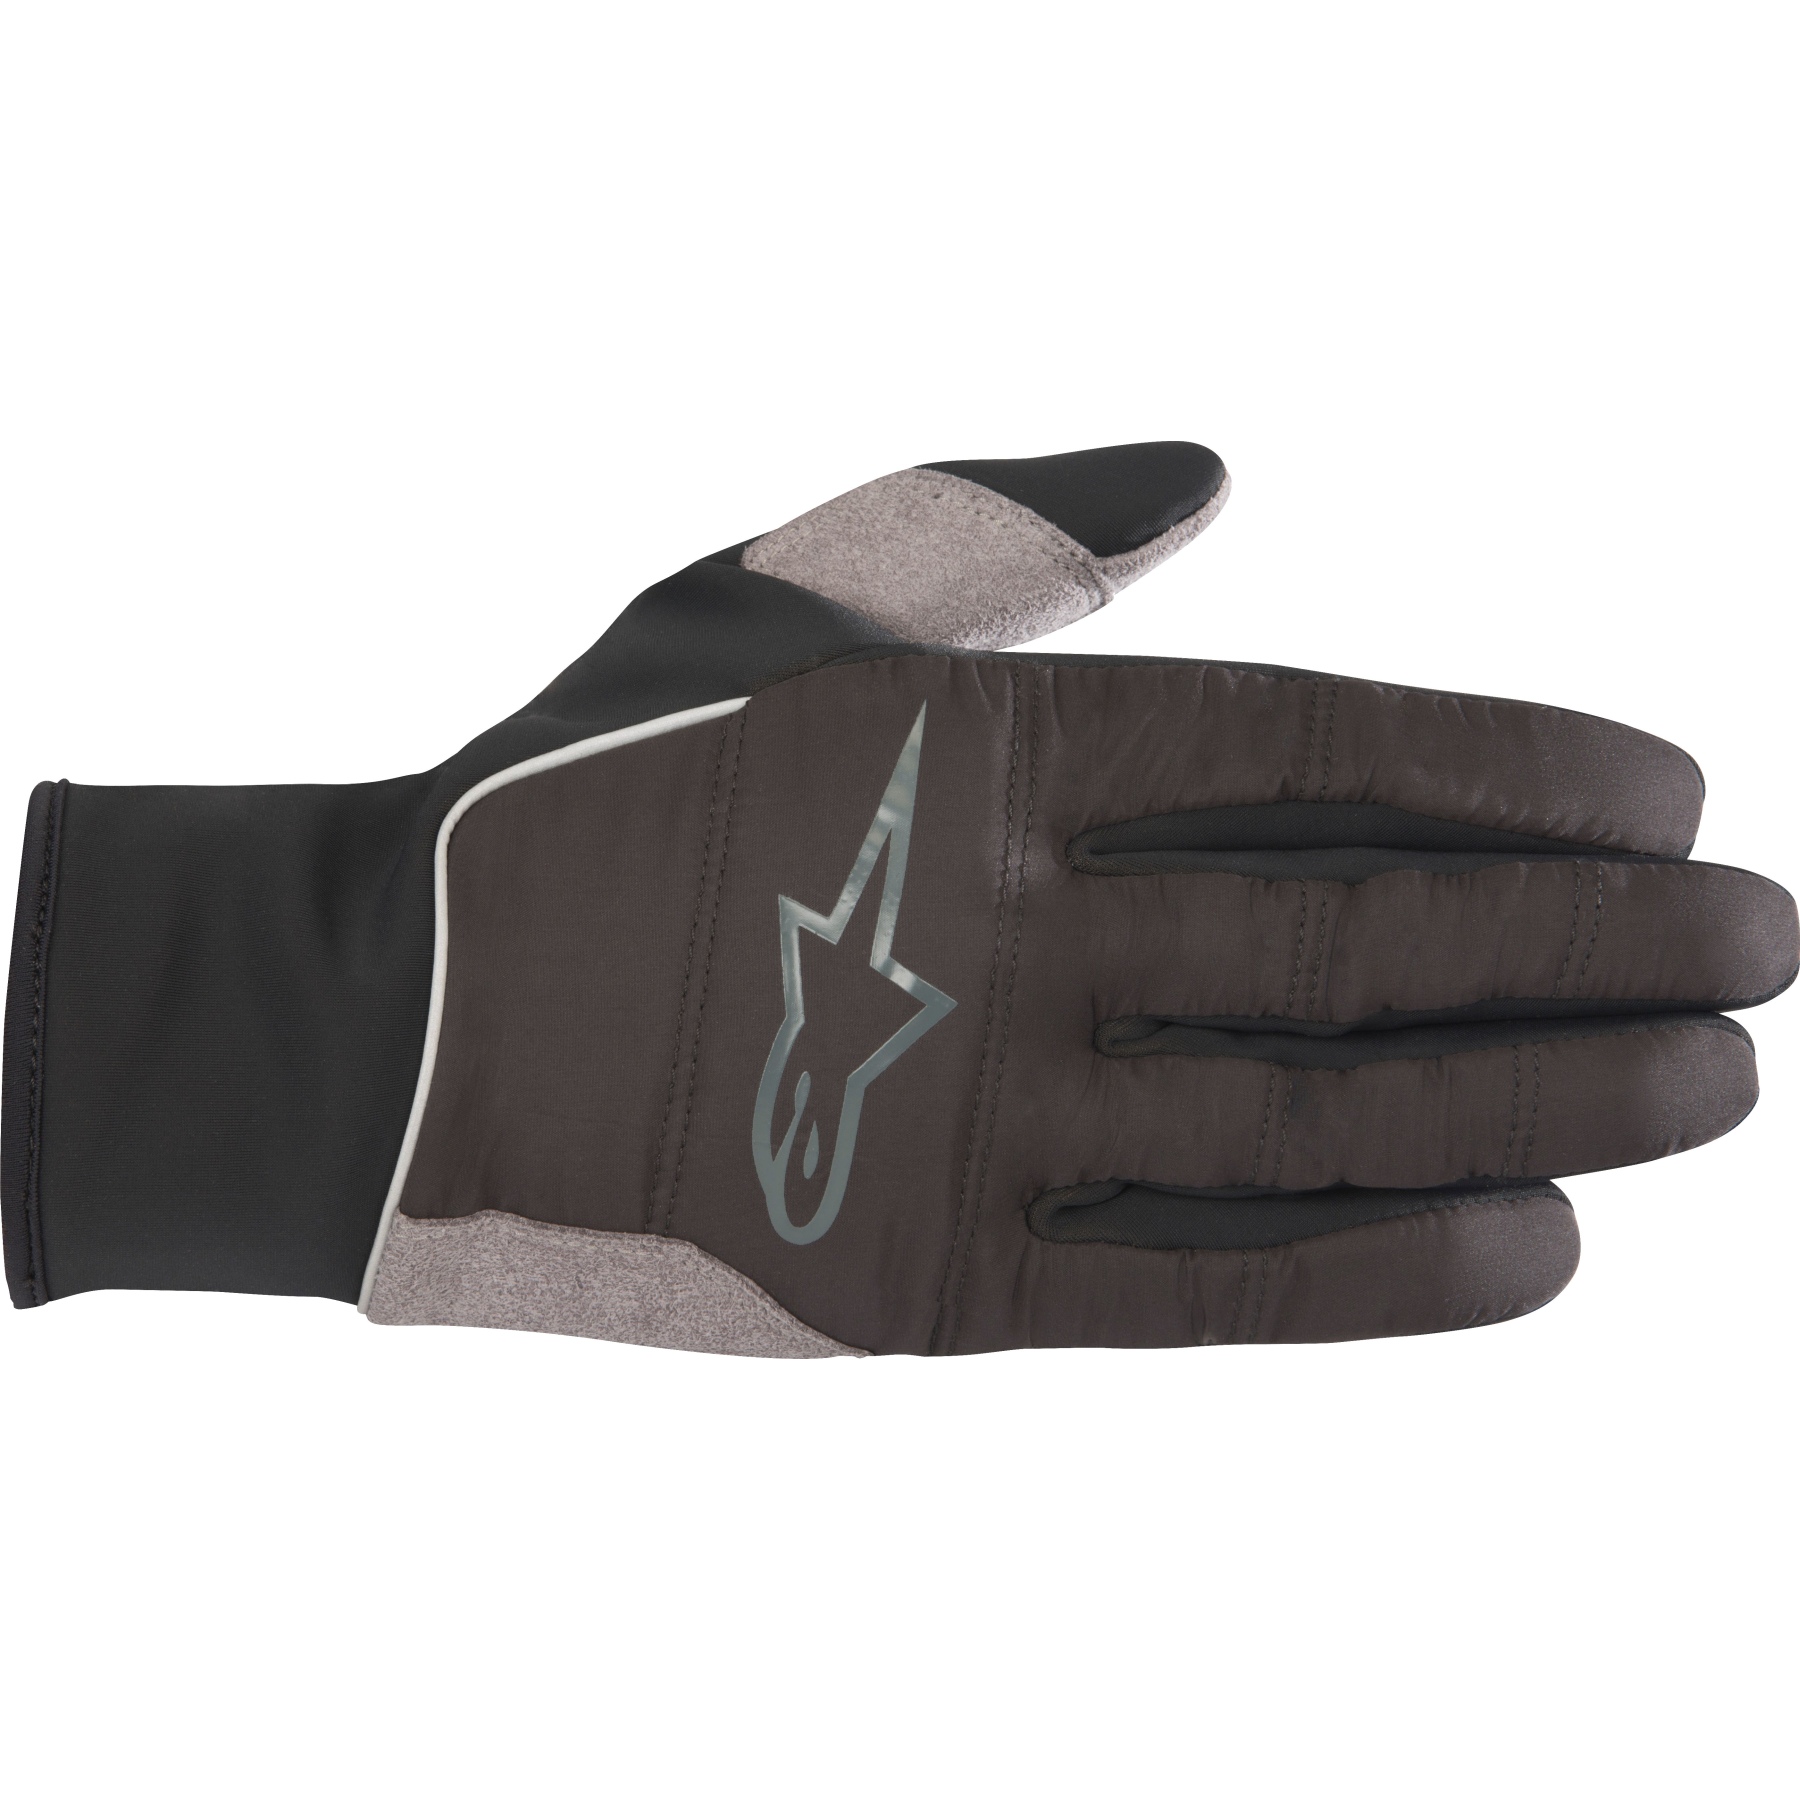 Produktbild von Alpinestars Cascade Warm Tech Handschuhe - schwarz 1520418